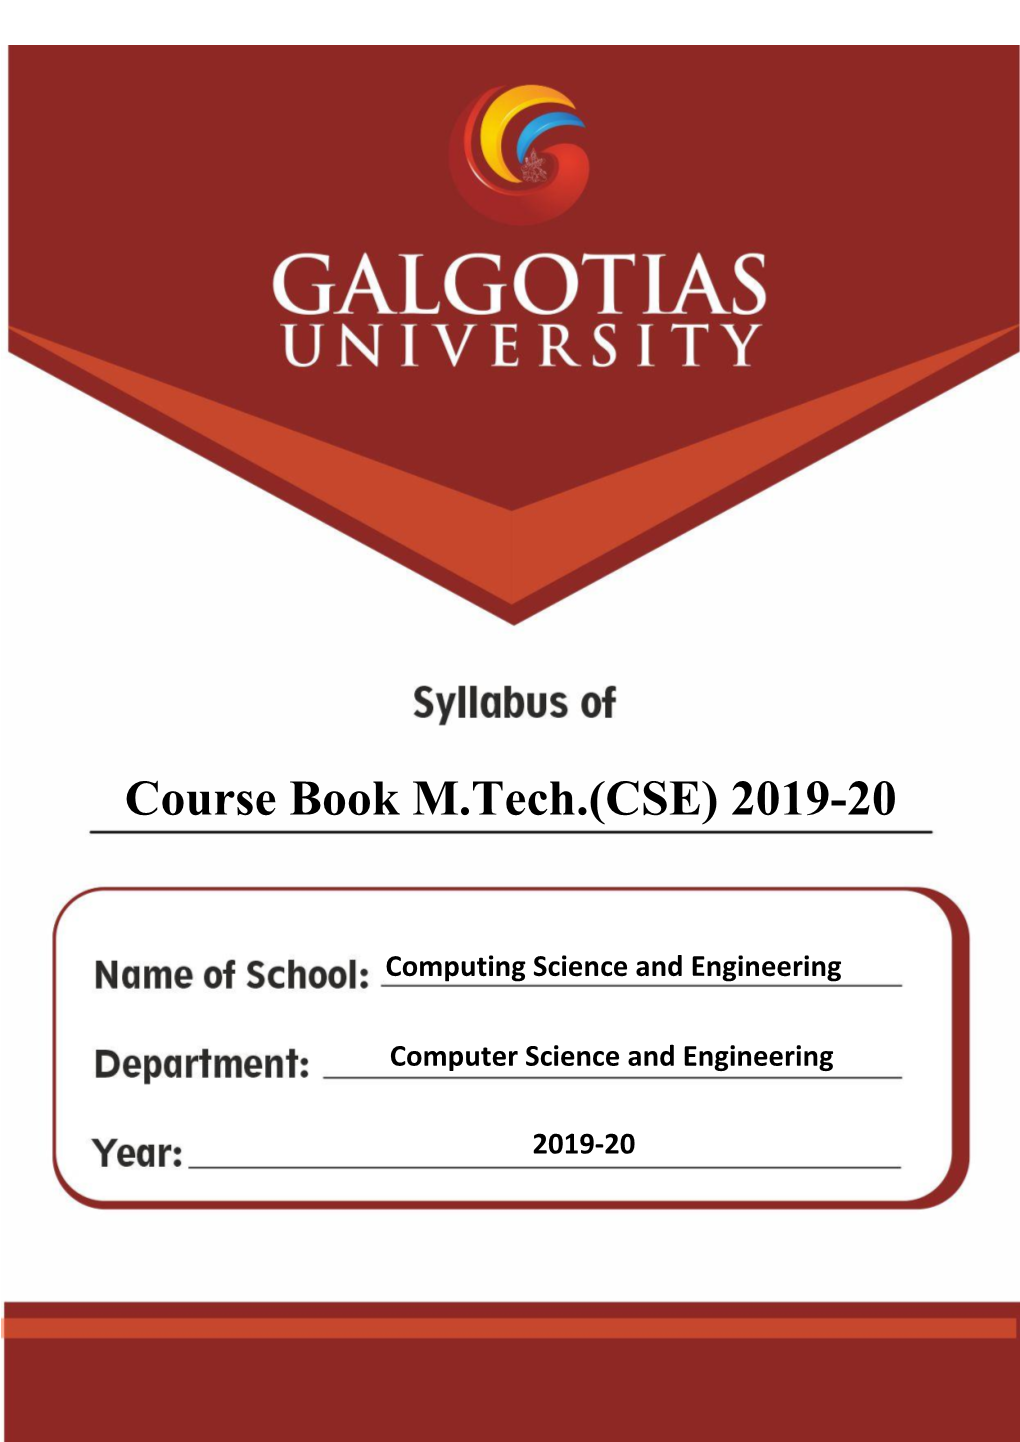 Course Book M.Tech.(CSE) 2019-20